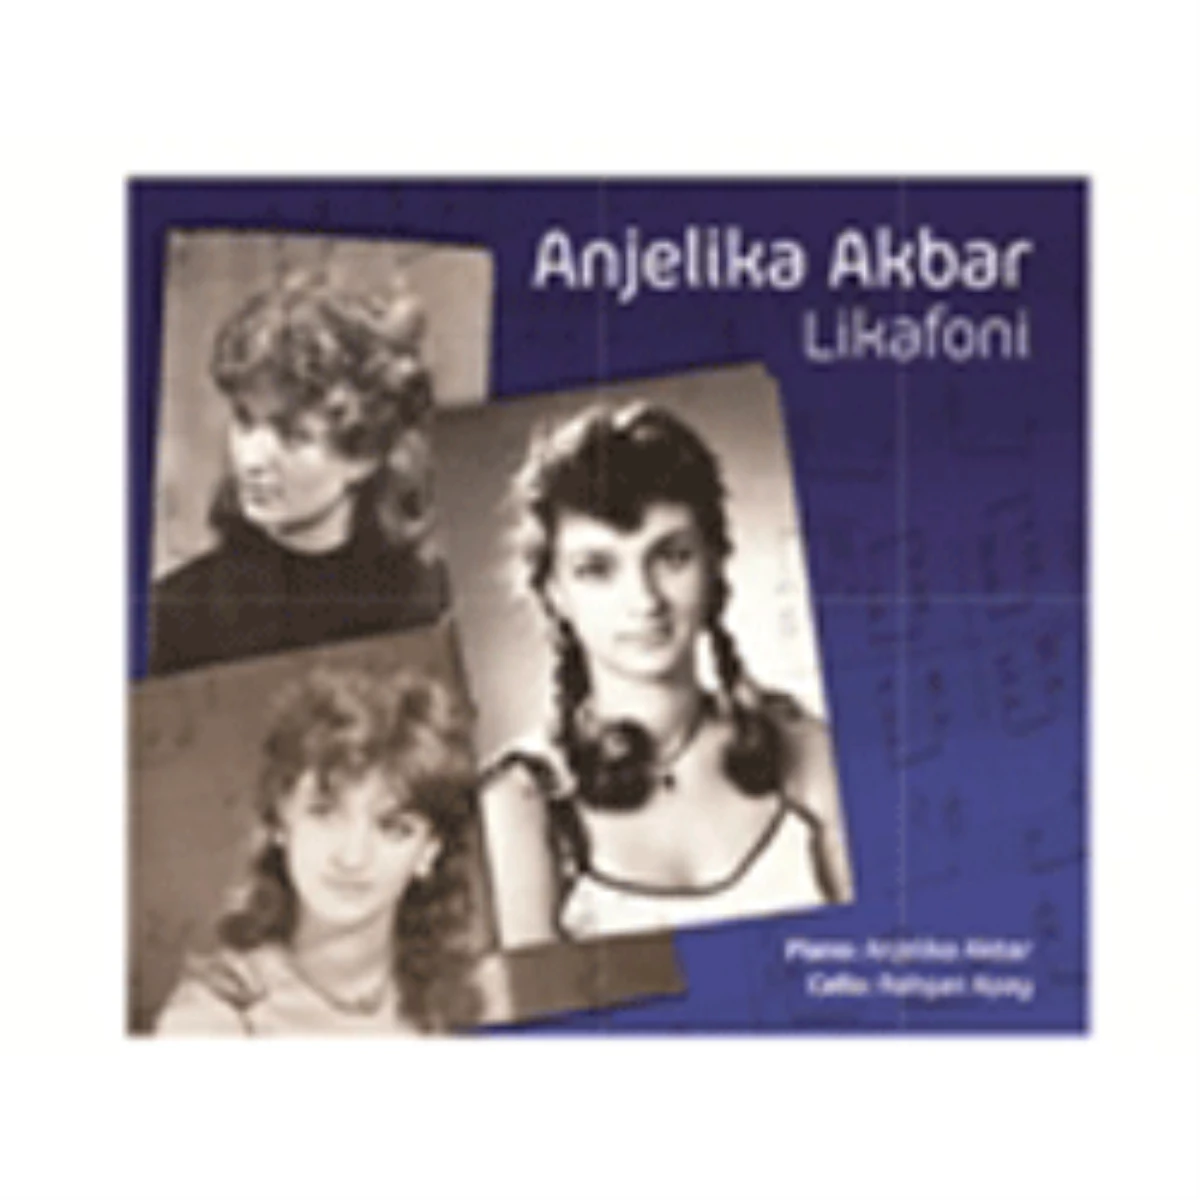 Anjelika Akbar, "Likafoni" Albümüyle Gençlere Sesleniyor!